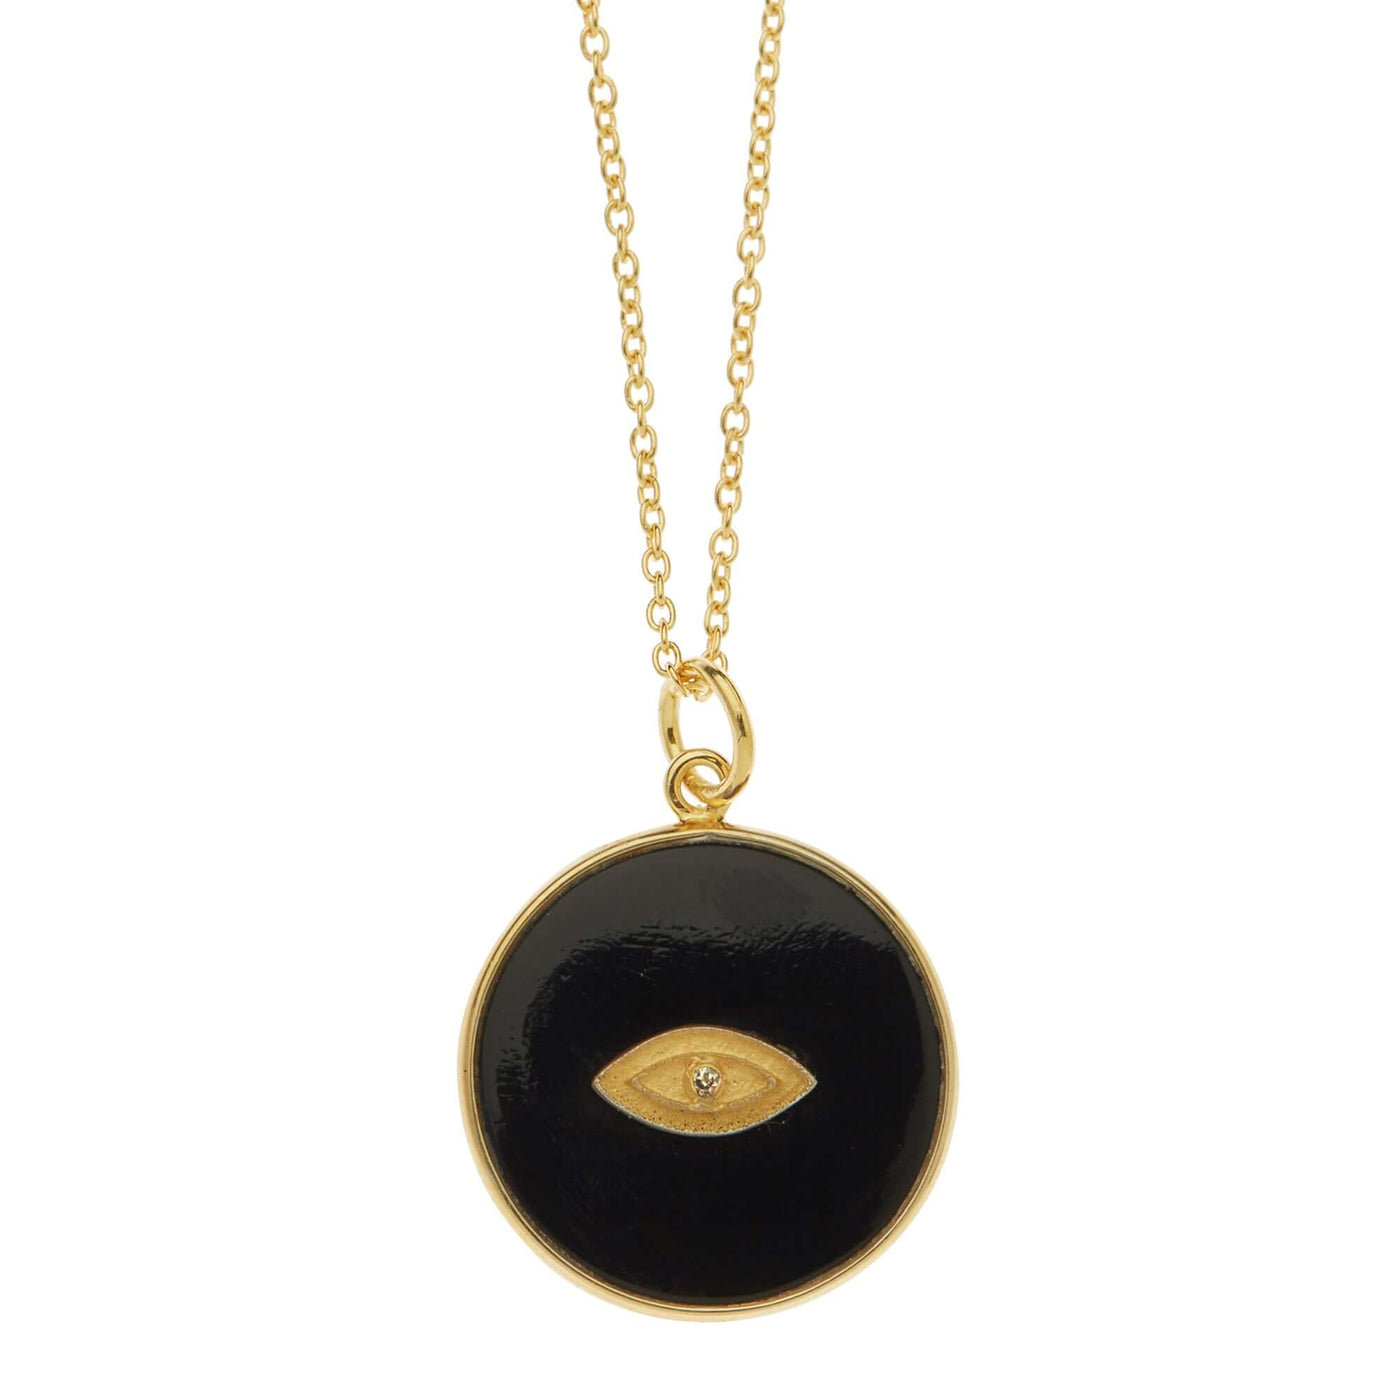 All Seeing Round Eye Necklace with Black Onyx - Eye M by Ileana Makri